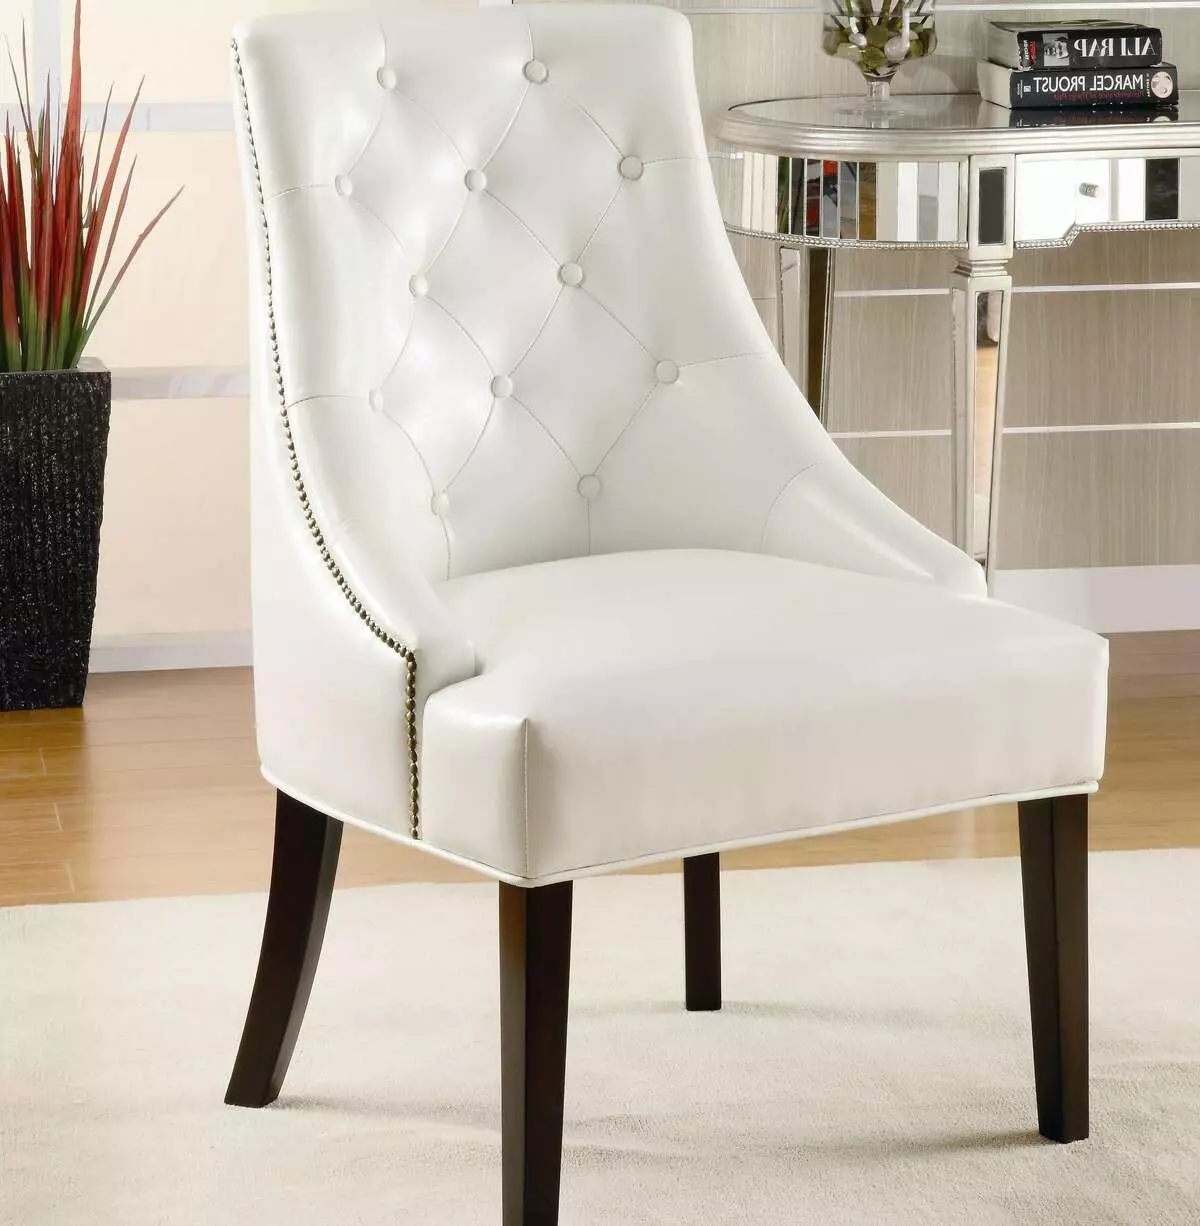 Bløde stole til stuen: Chair-stole funktioner, blød ryg og negle af modeller og andre muligheder 9751_29